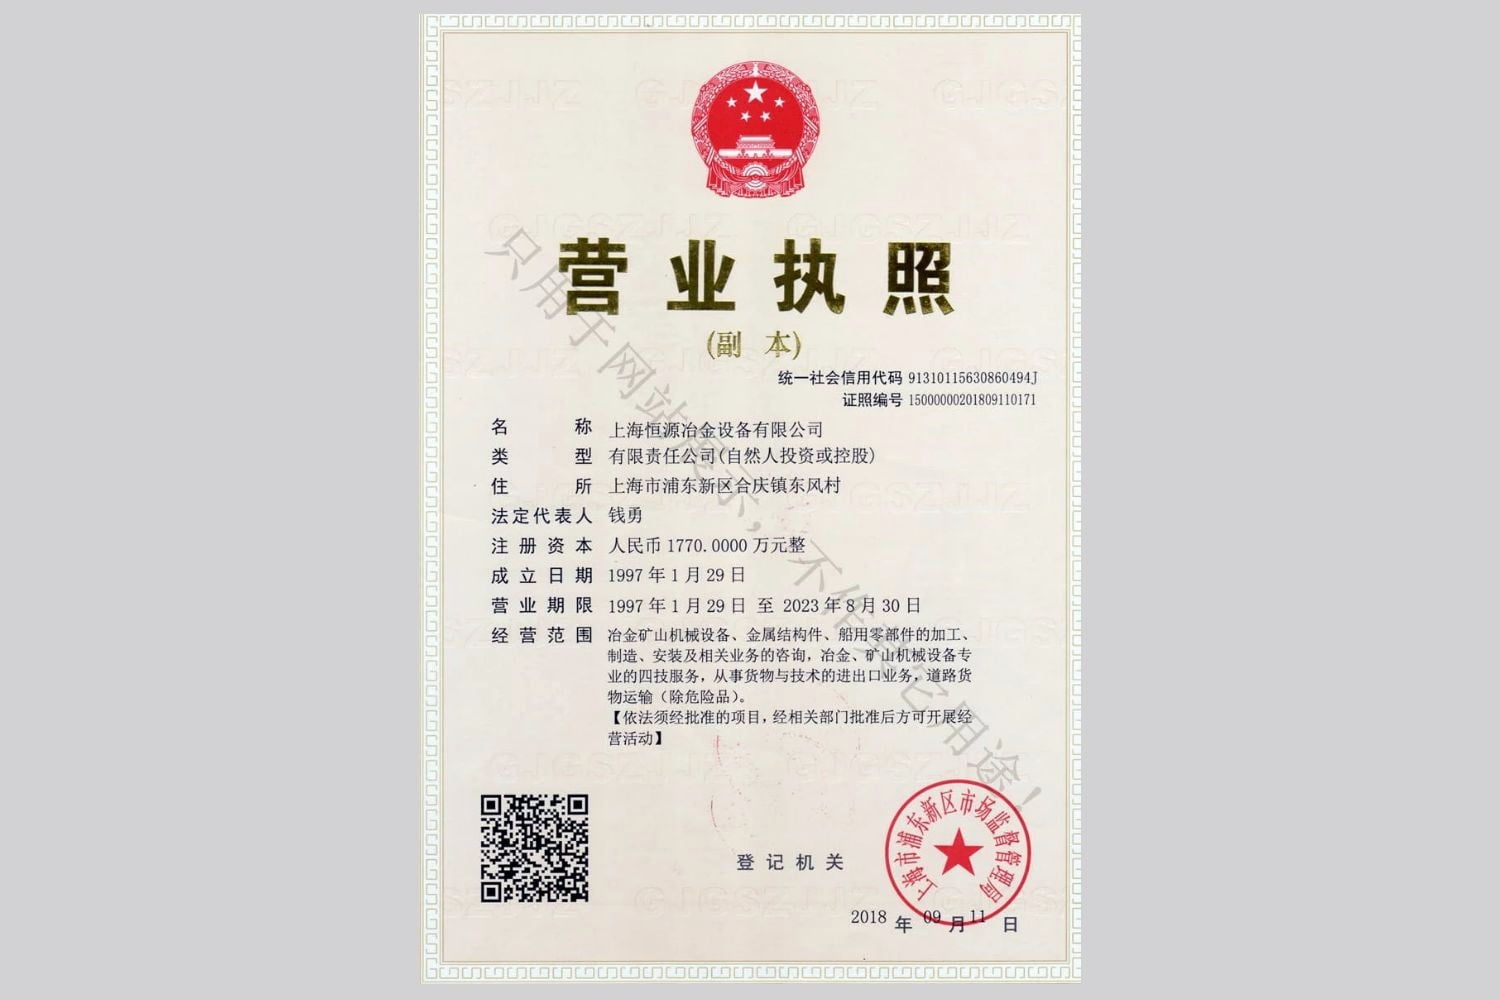  上海恒源冶金设备有限公司营业执照